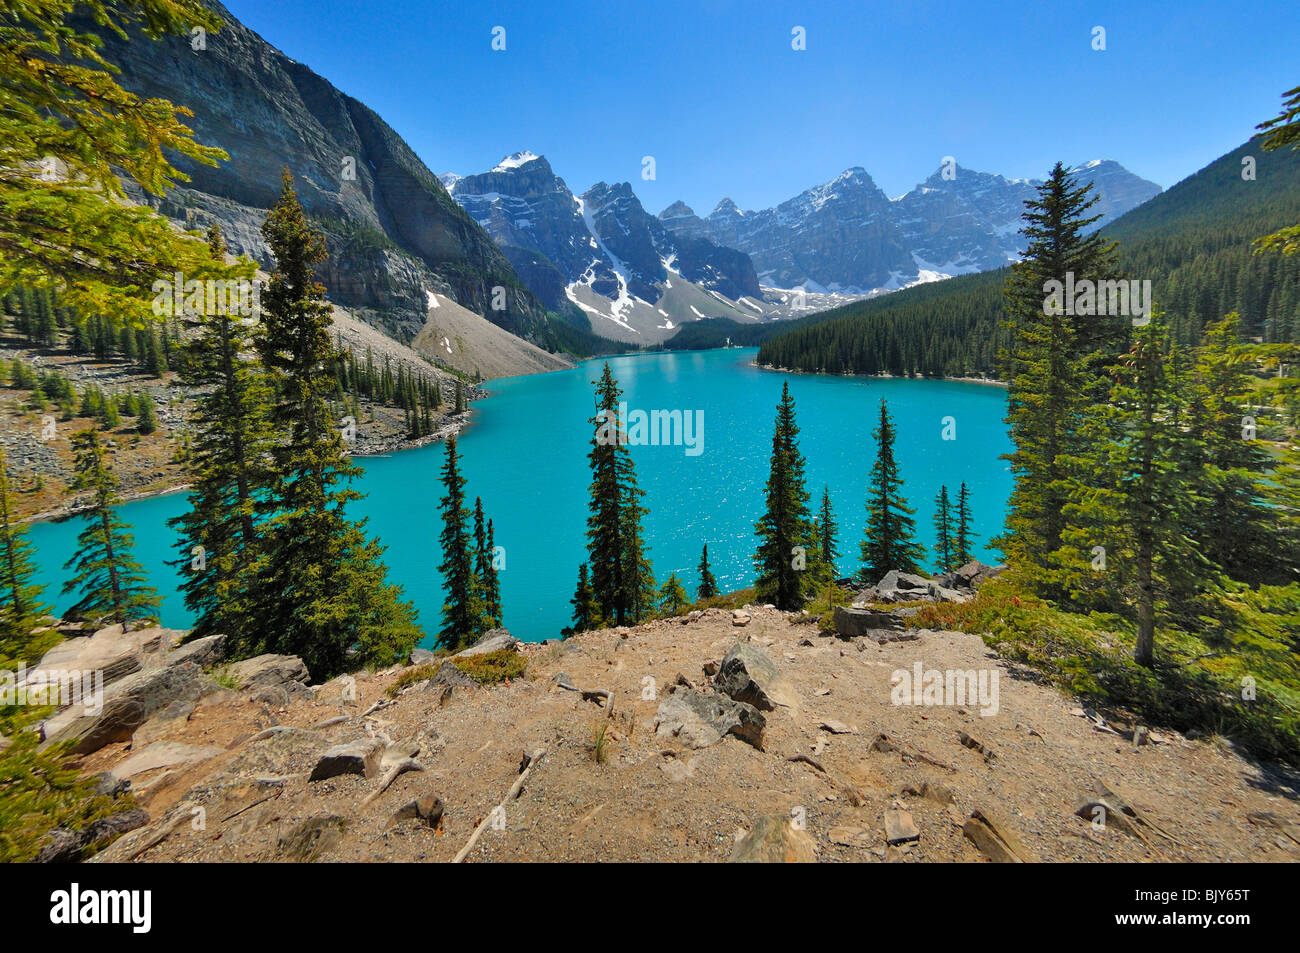 Le lac Moraine dans la province d'Alberta, Canada, est un des plus beaux lacs du pays. Banque D'Images